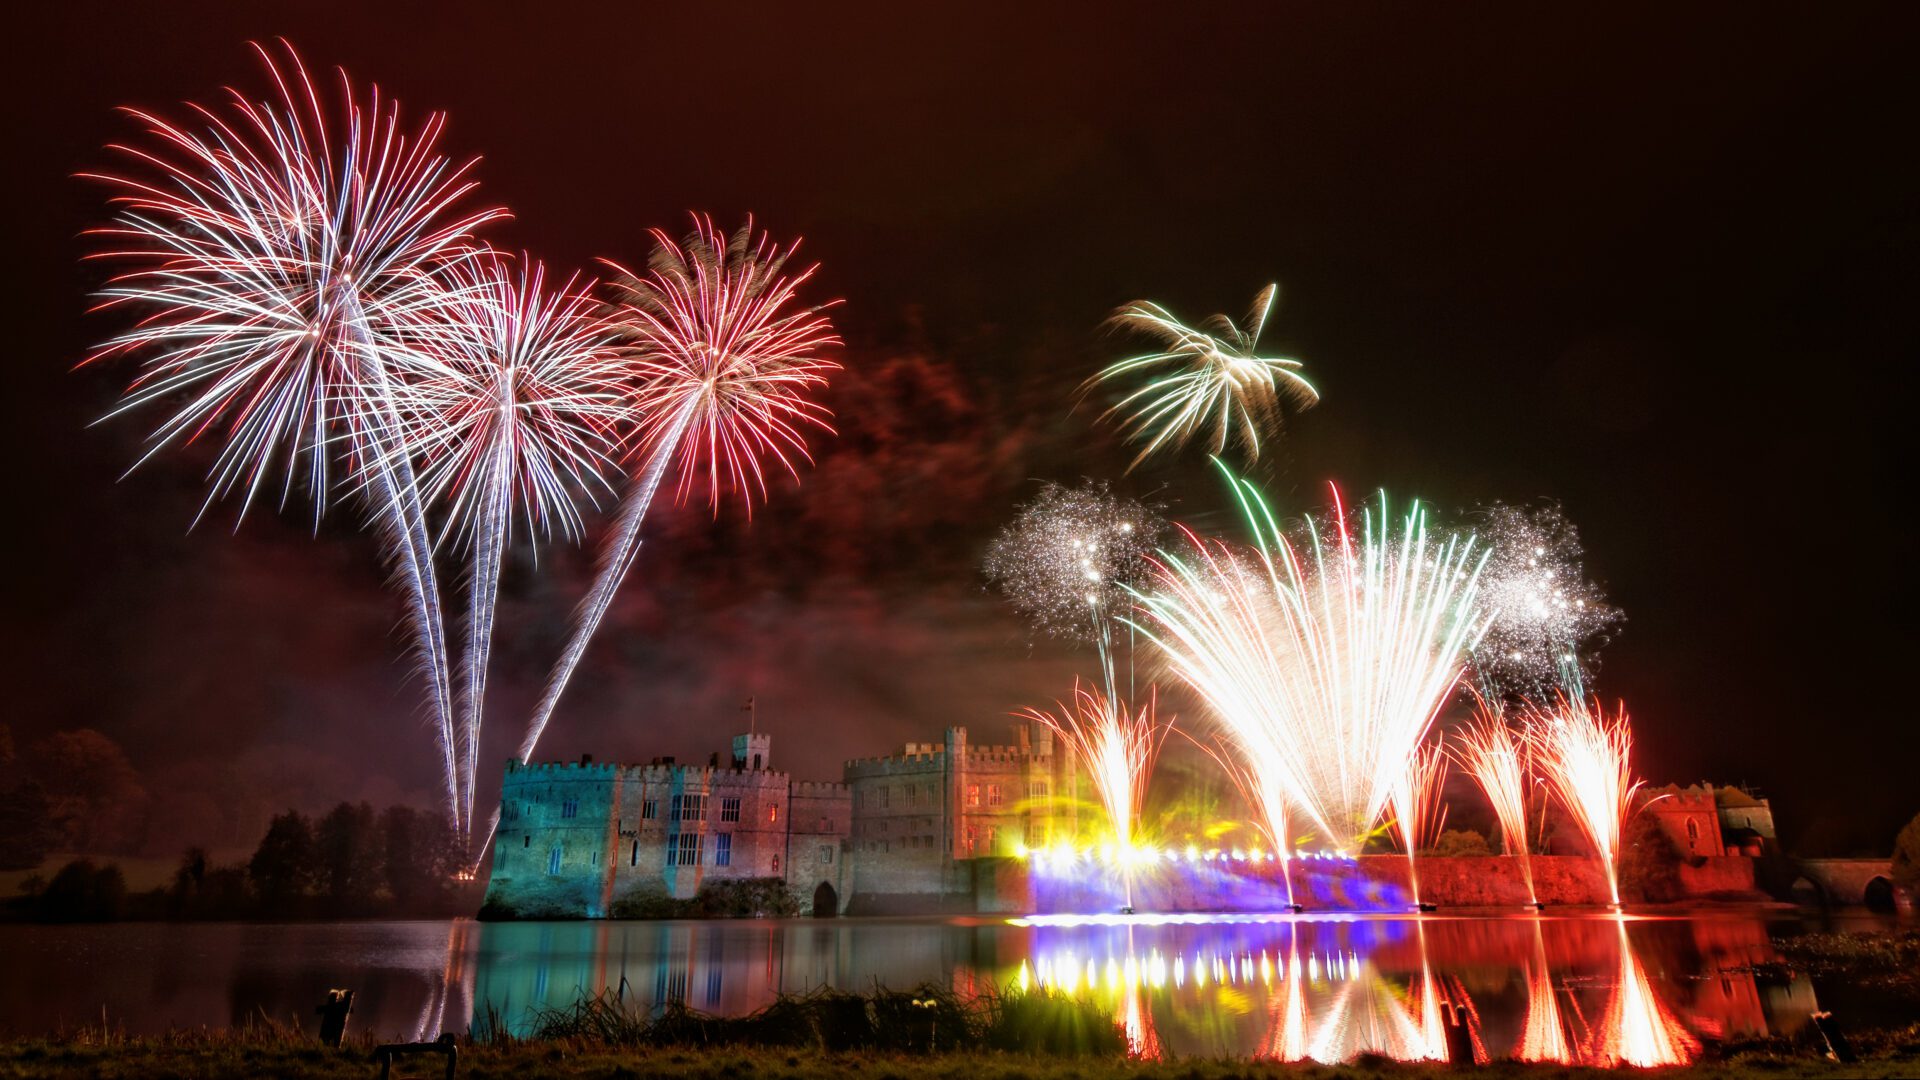 Leeds Castle Fireworks Spectacular